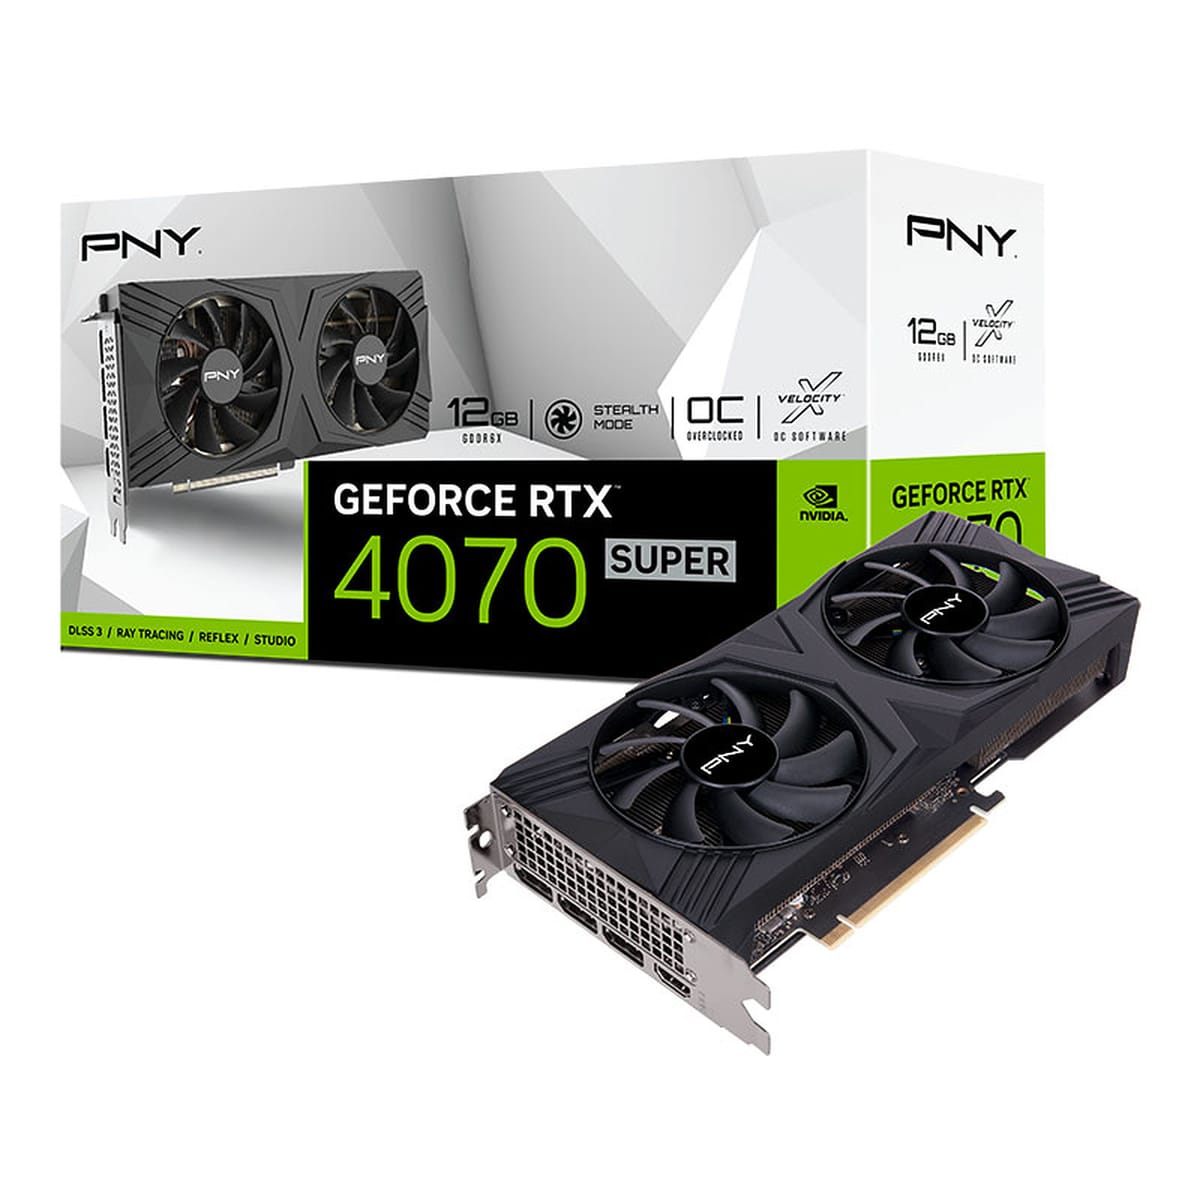 PNY sort les GeForce RTX Super série 40